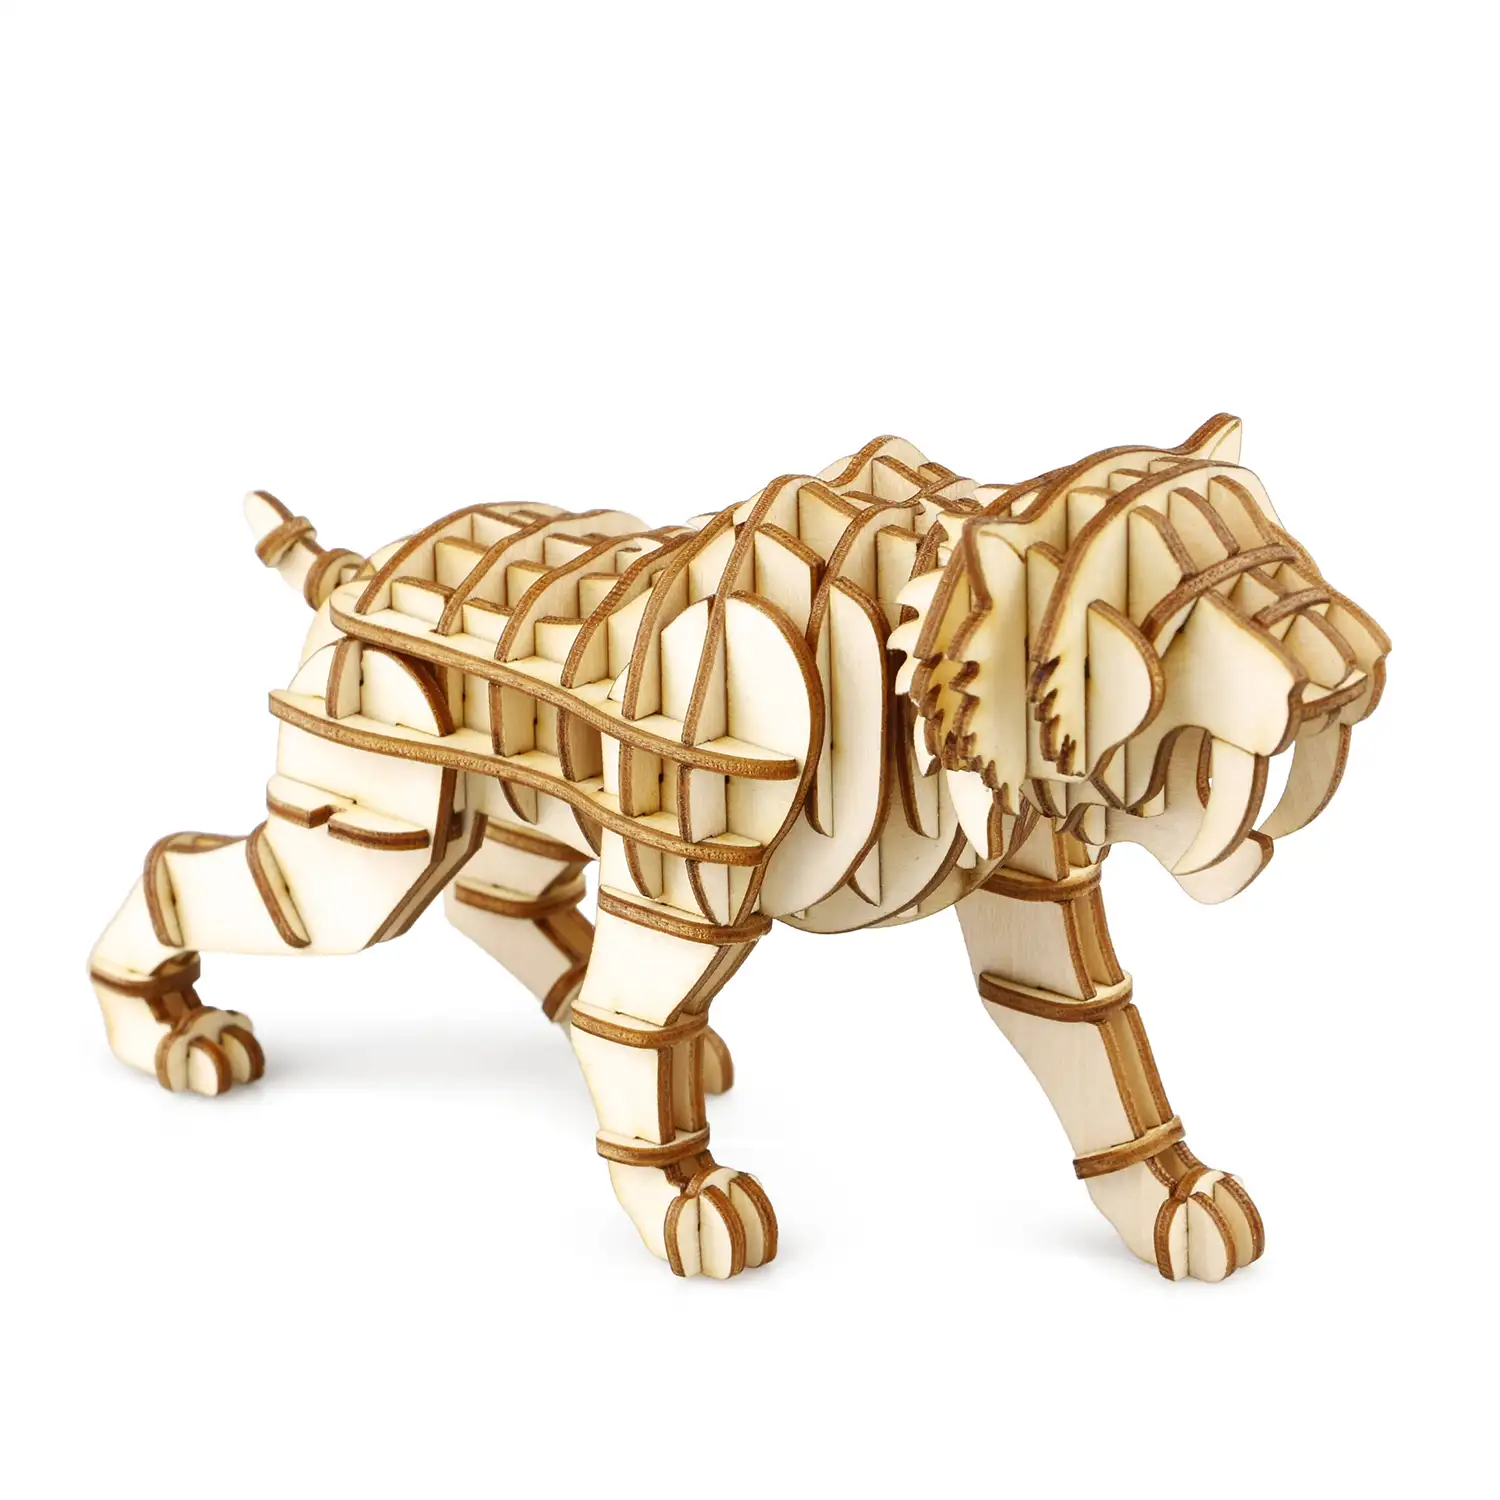 Tigre dientes de sable. Maqueta 3D realista con gran detalle, 59 piezas